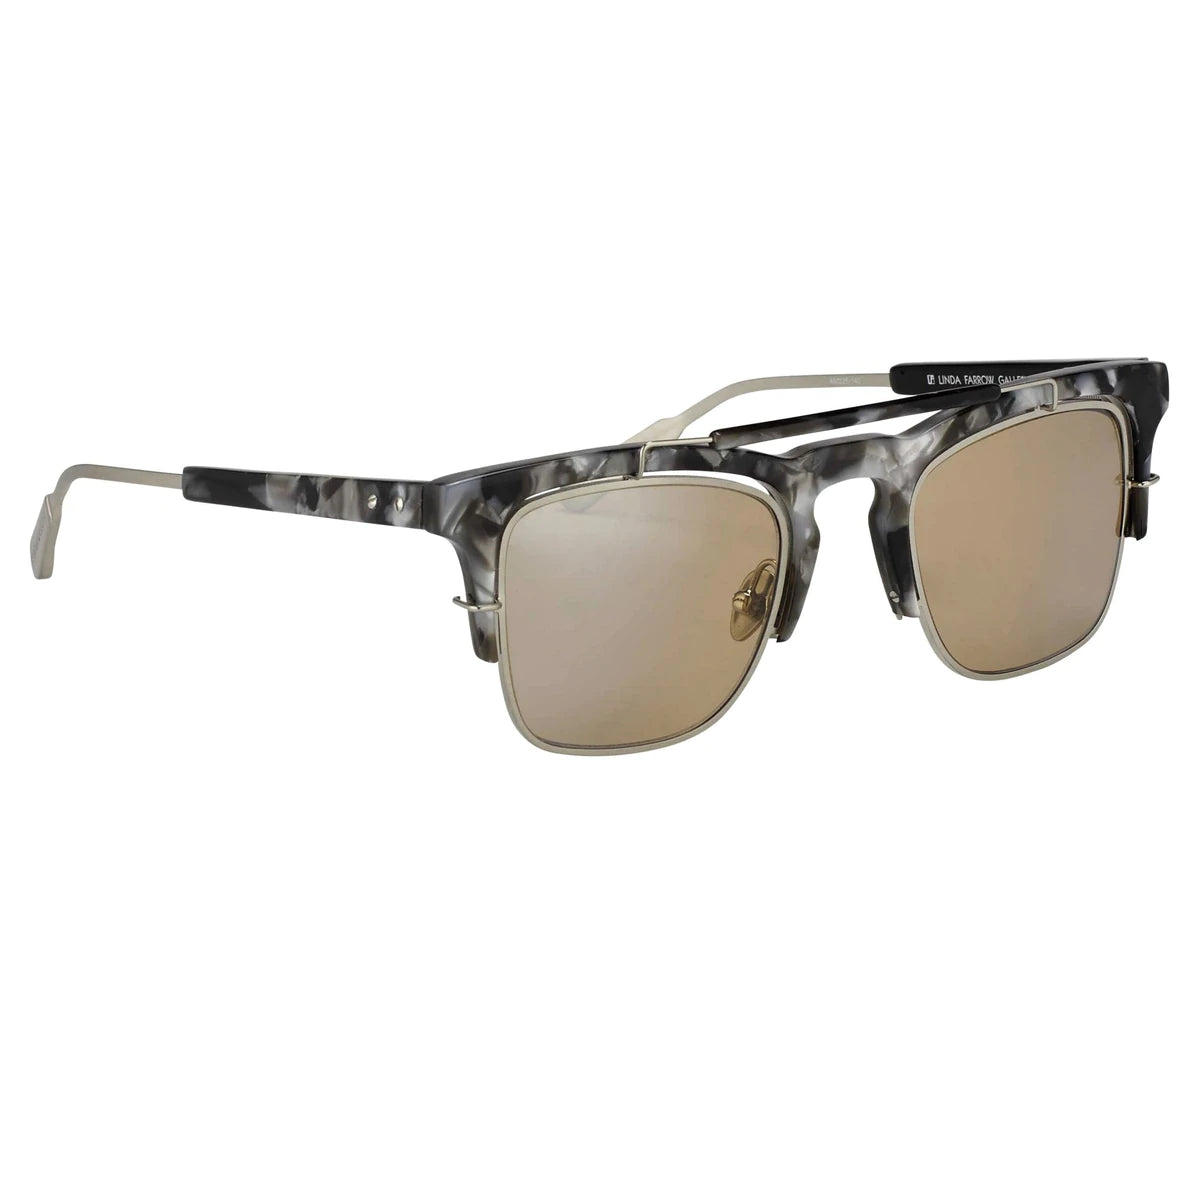 Kris Van Assche Sunglasses Round Burnt Silver and Grey